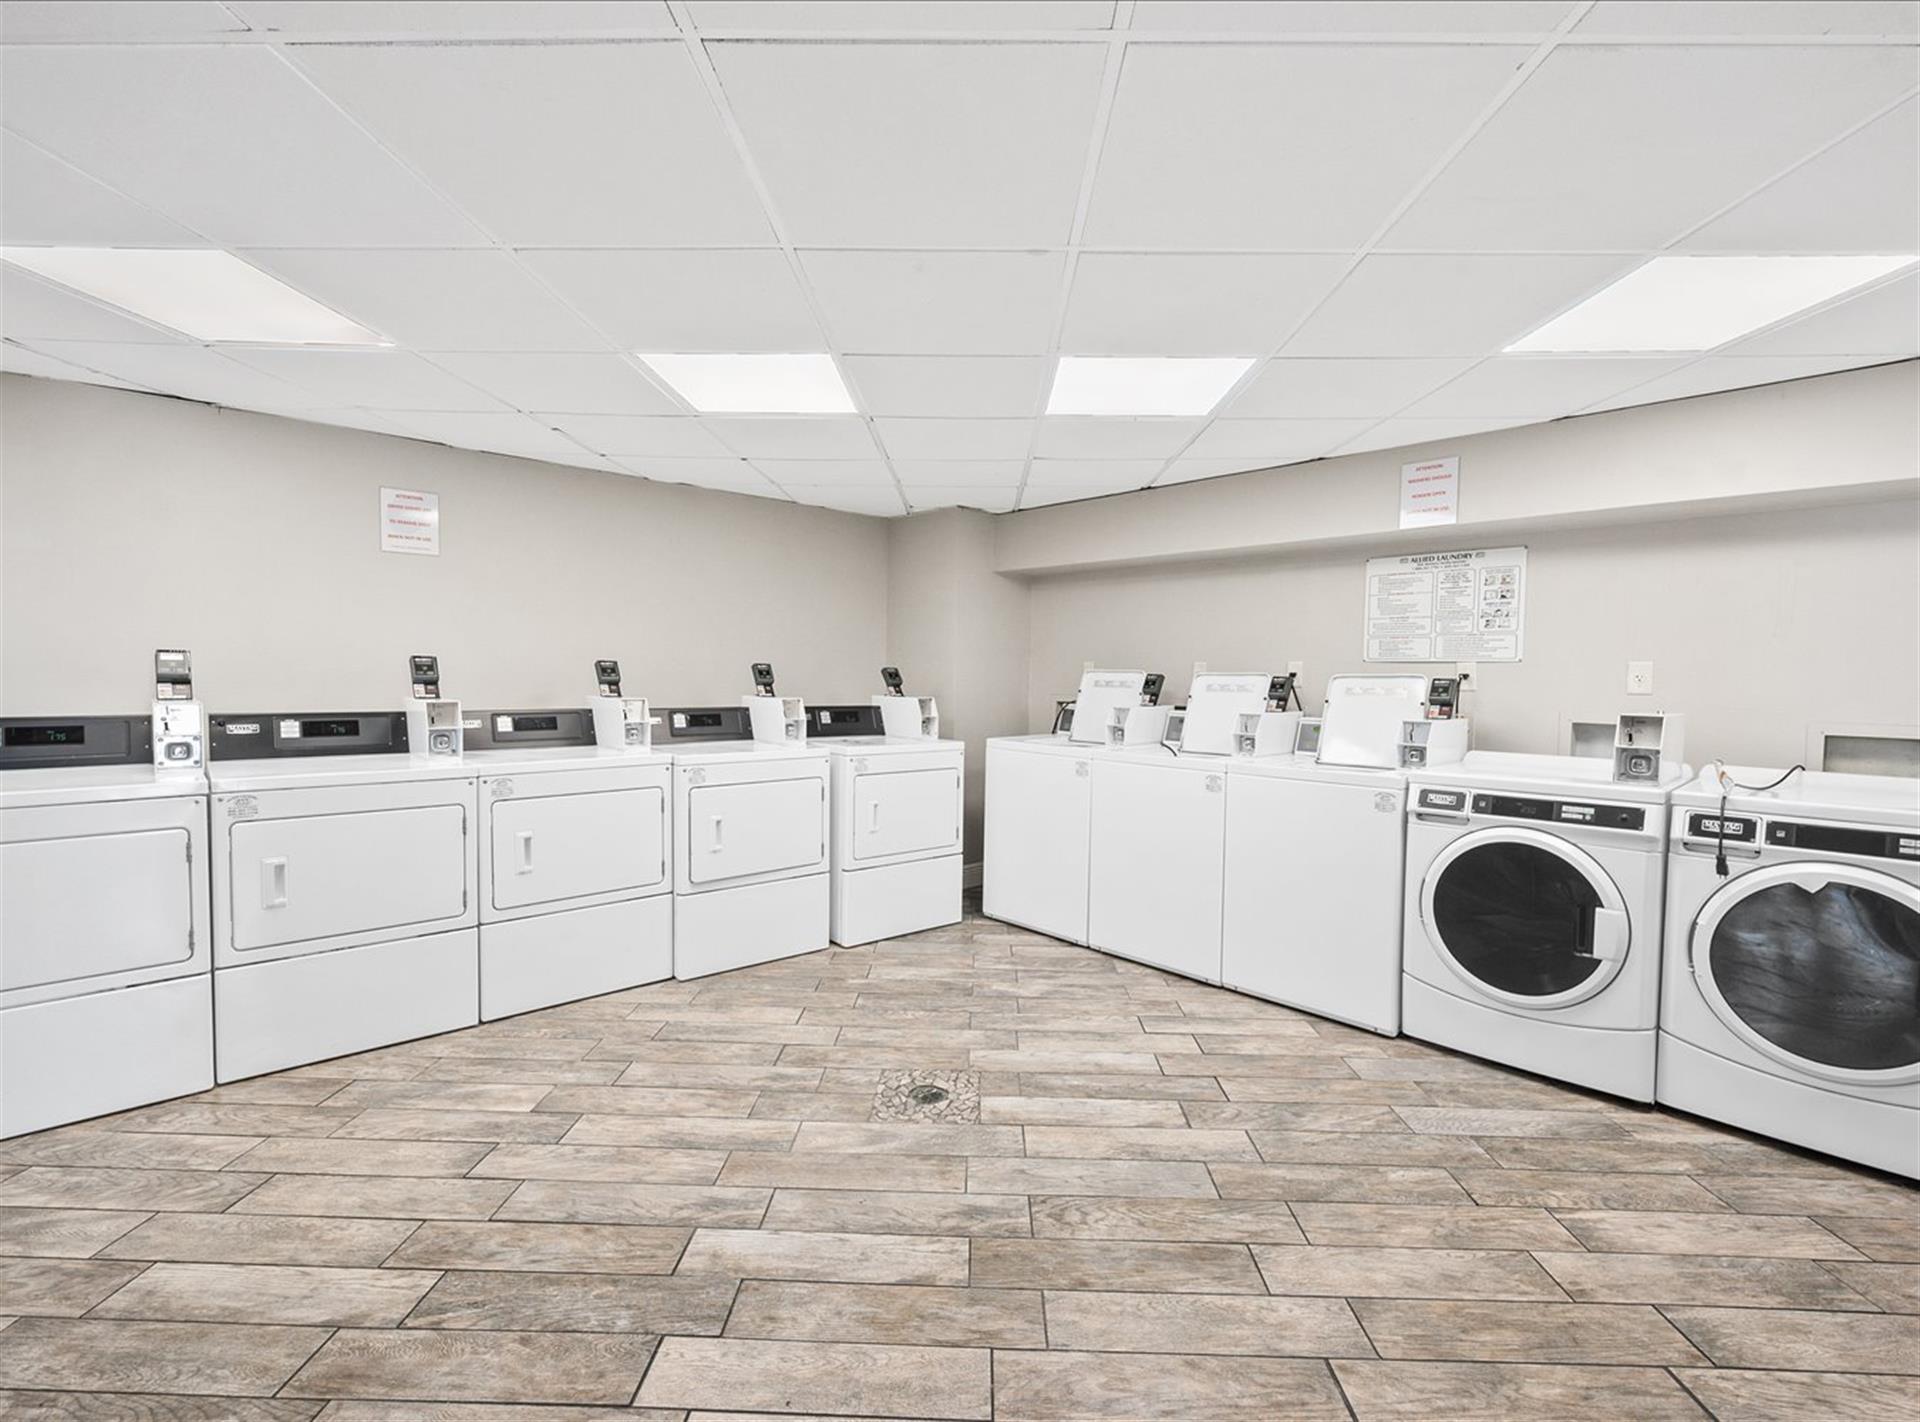 Fourth  Sixth Floor Laundry Facilities